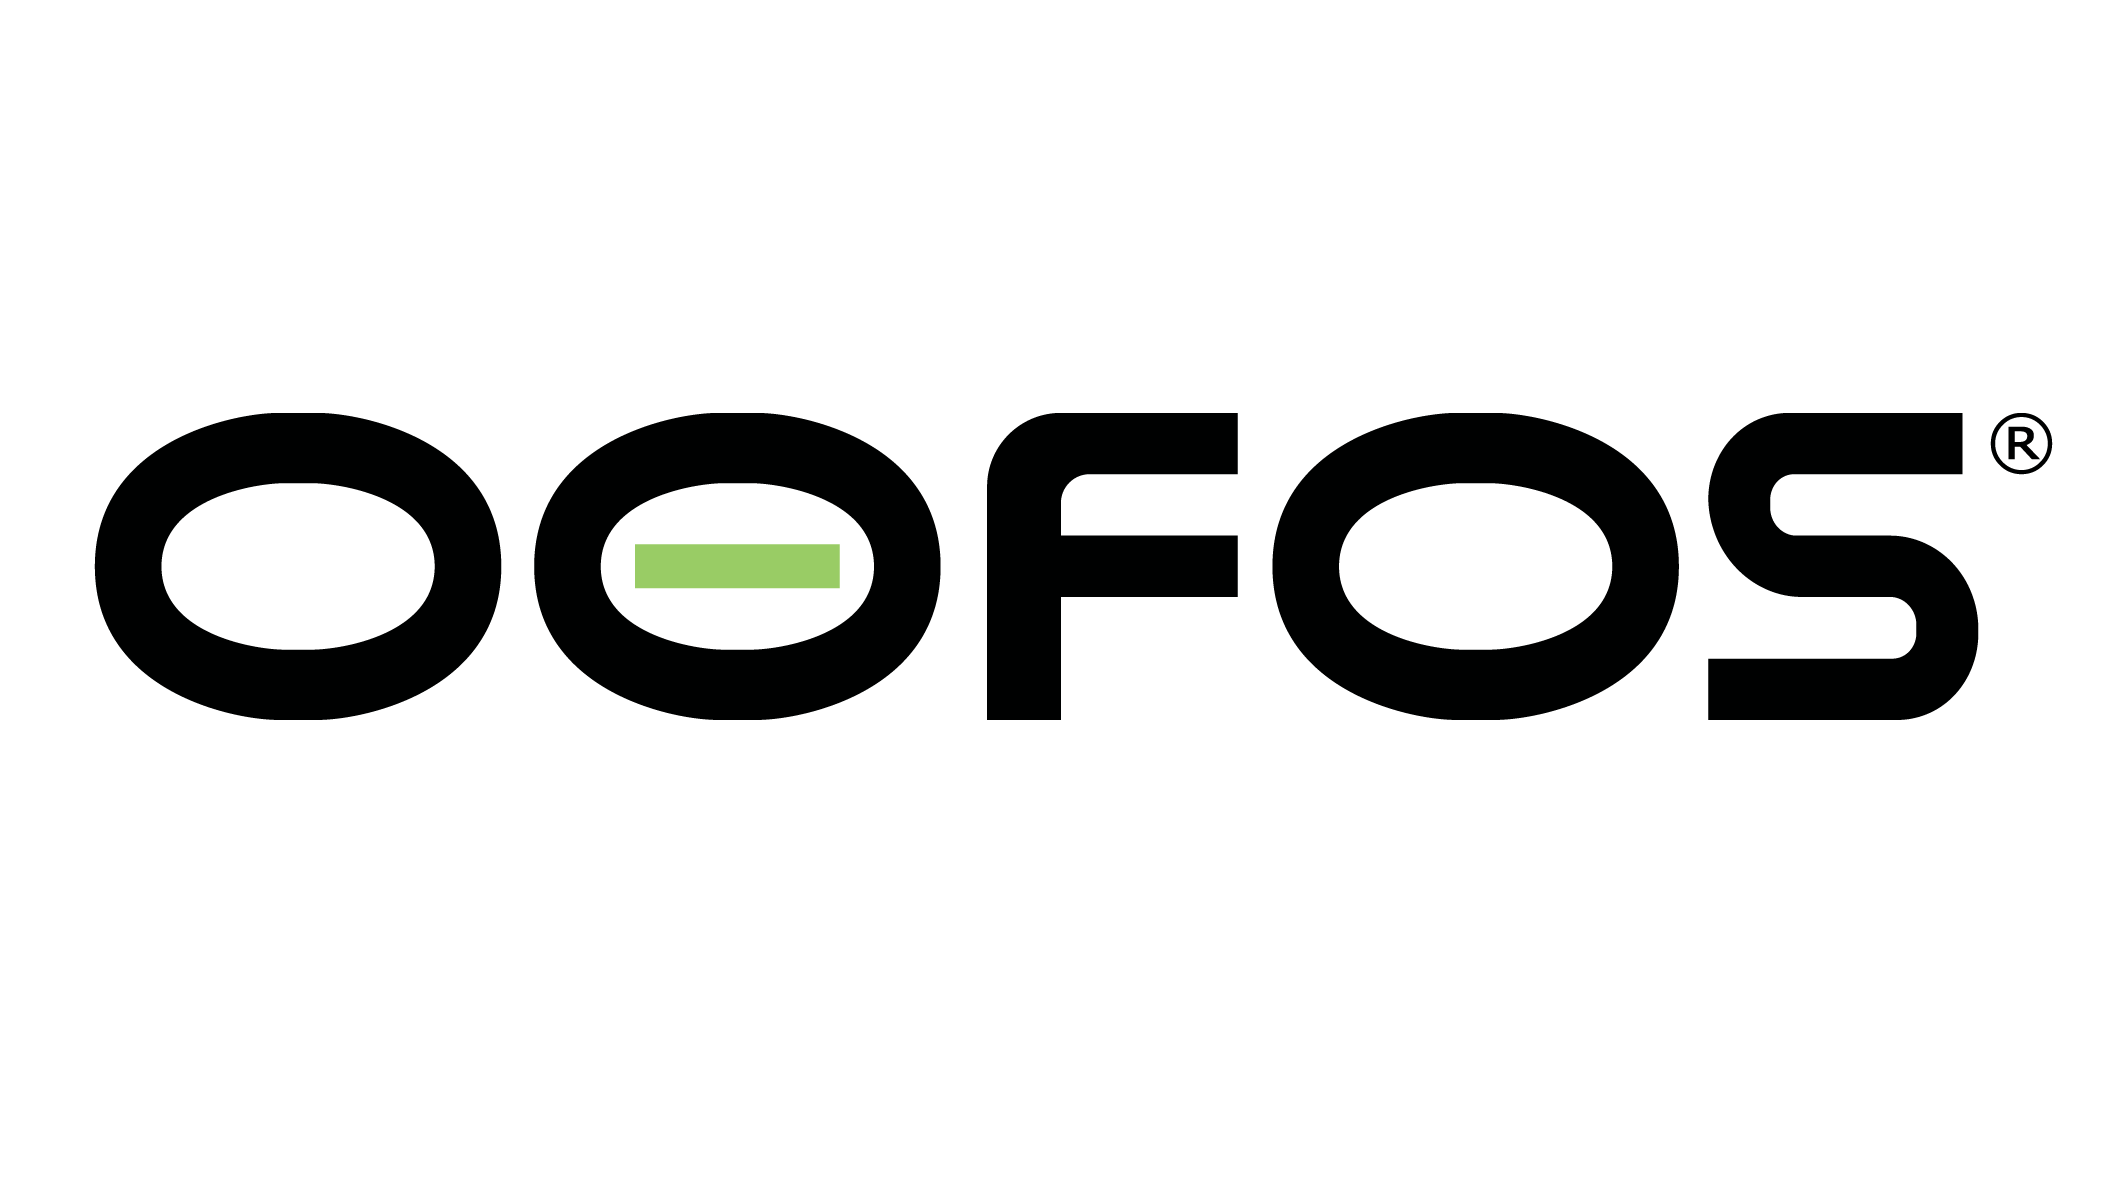 Ooofos Logo